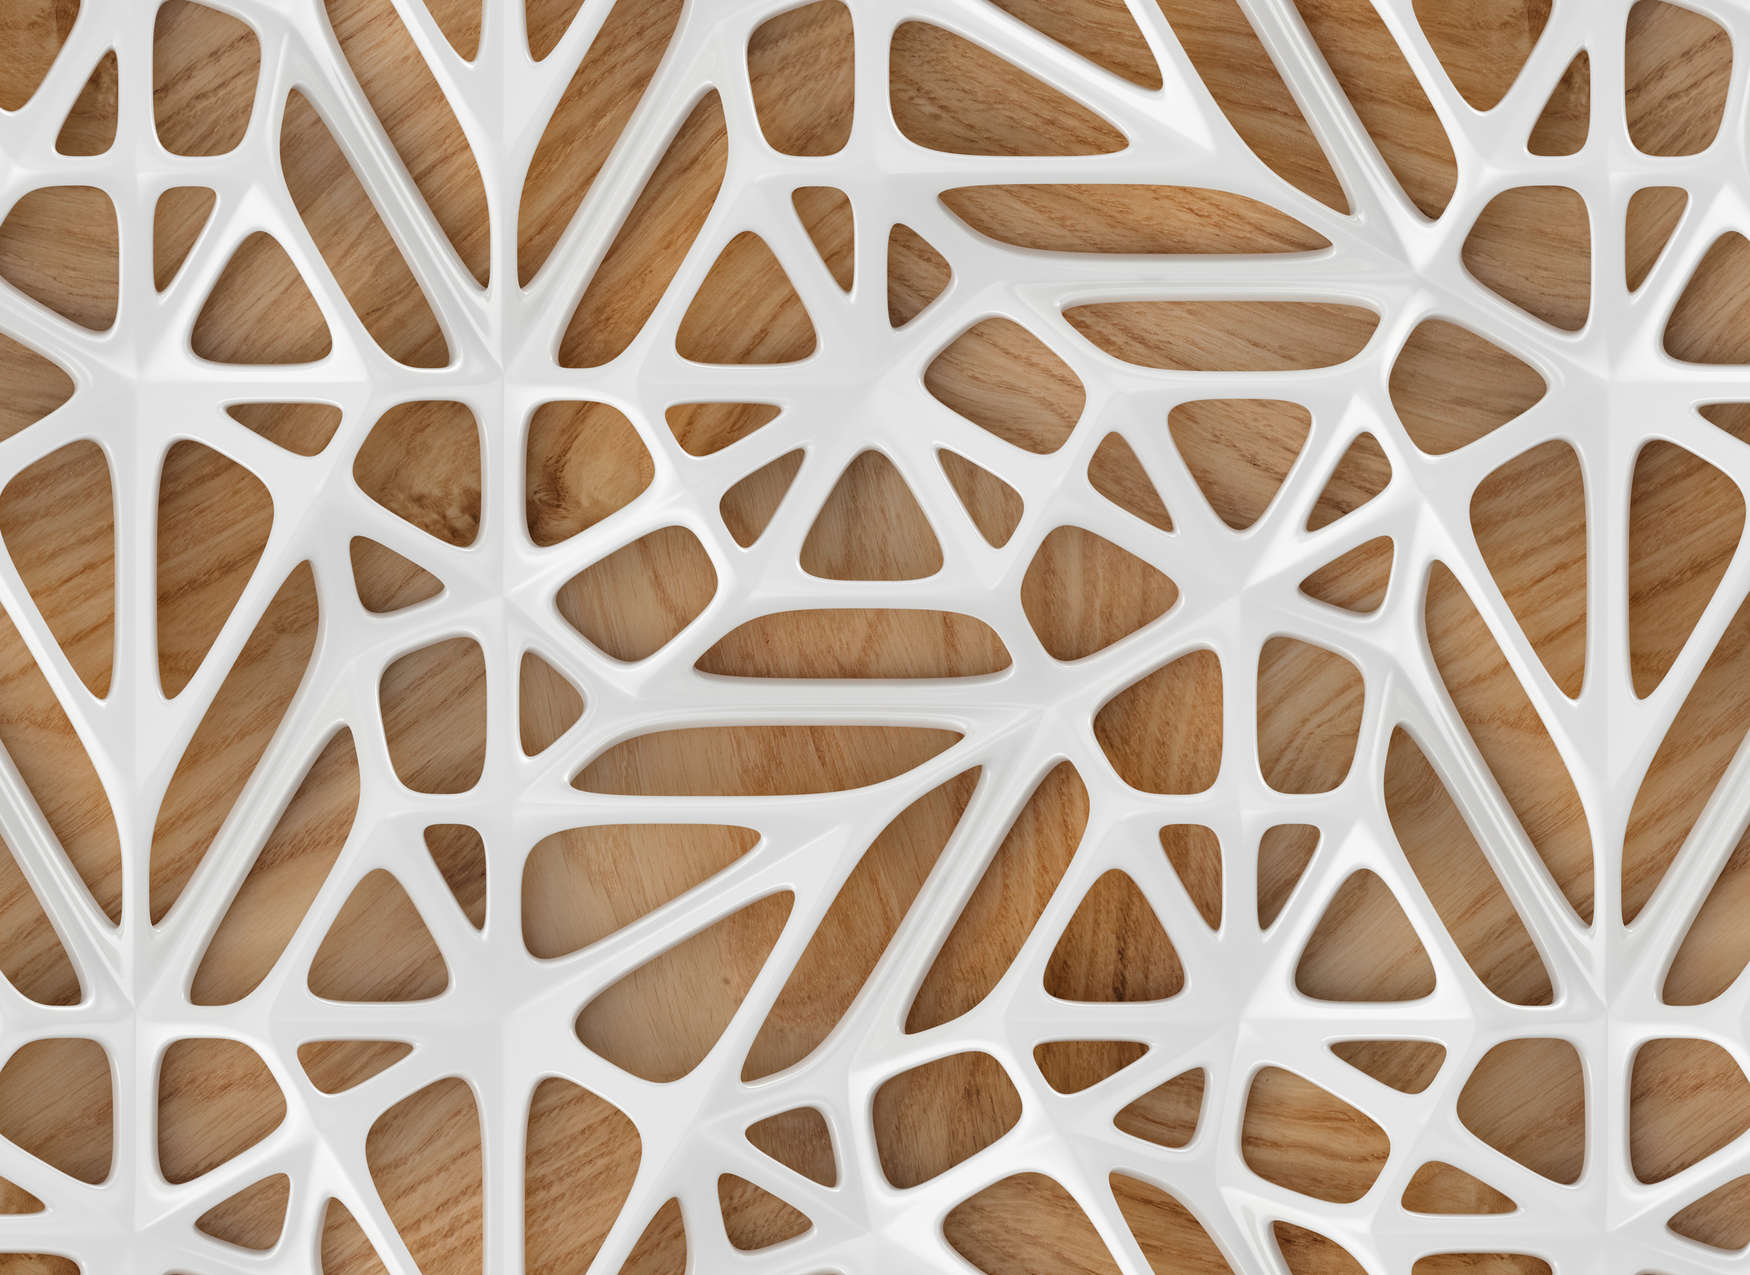             Papier peint imitation bois design moderne 3D - blanc, marron
        